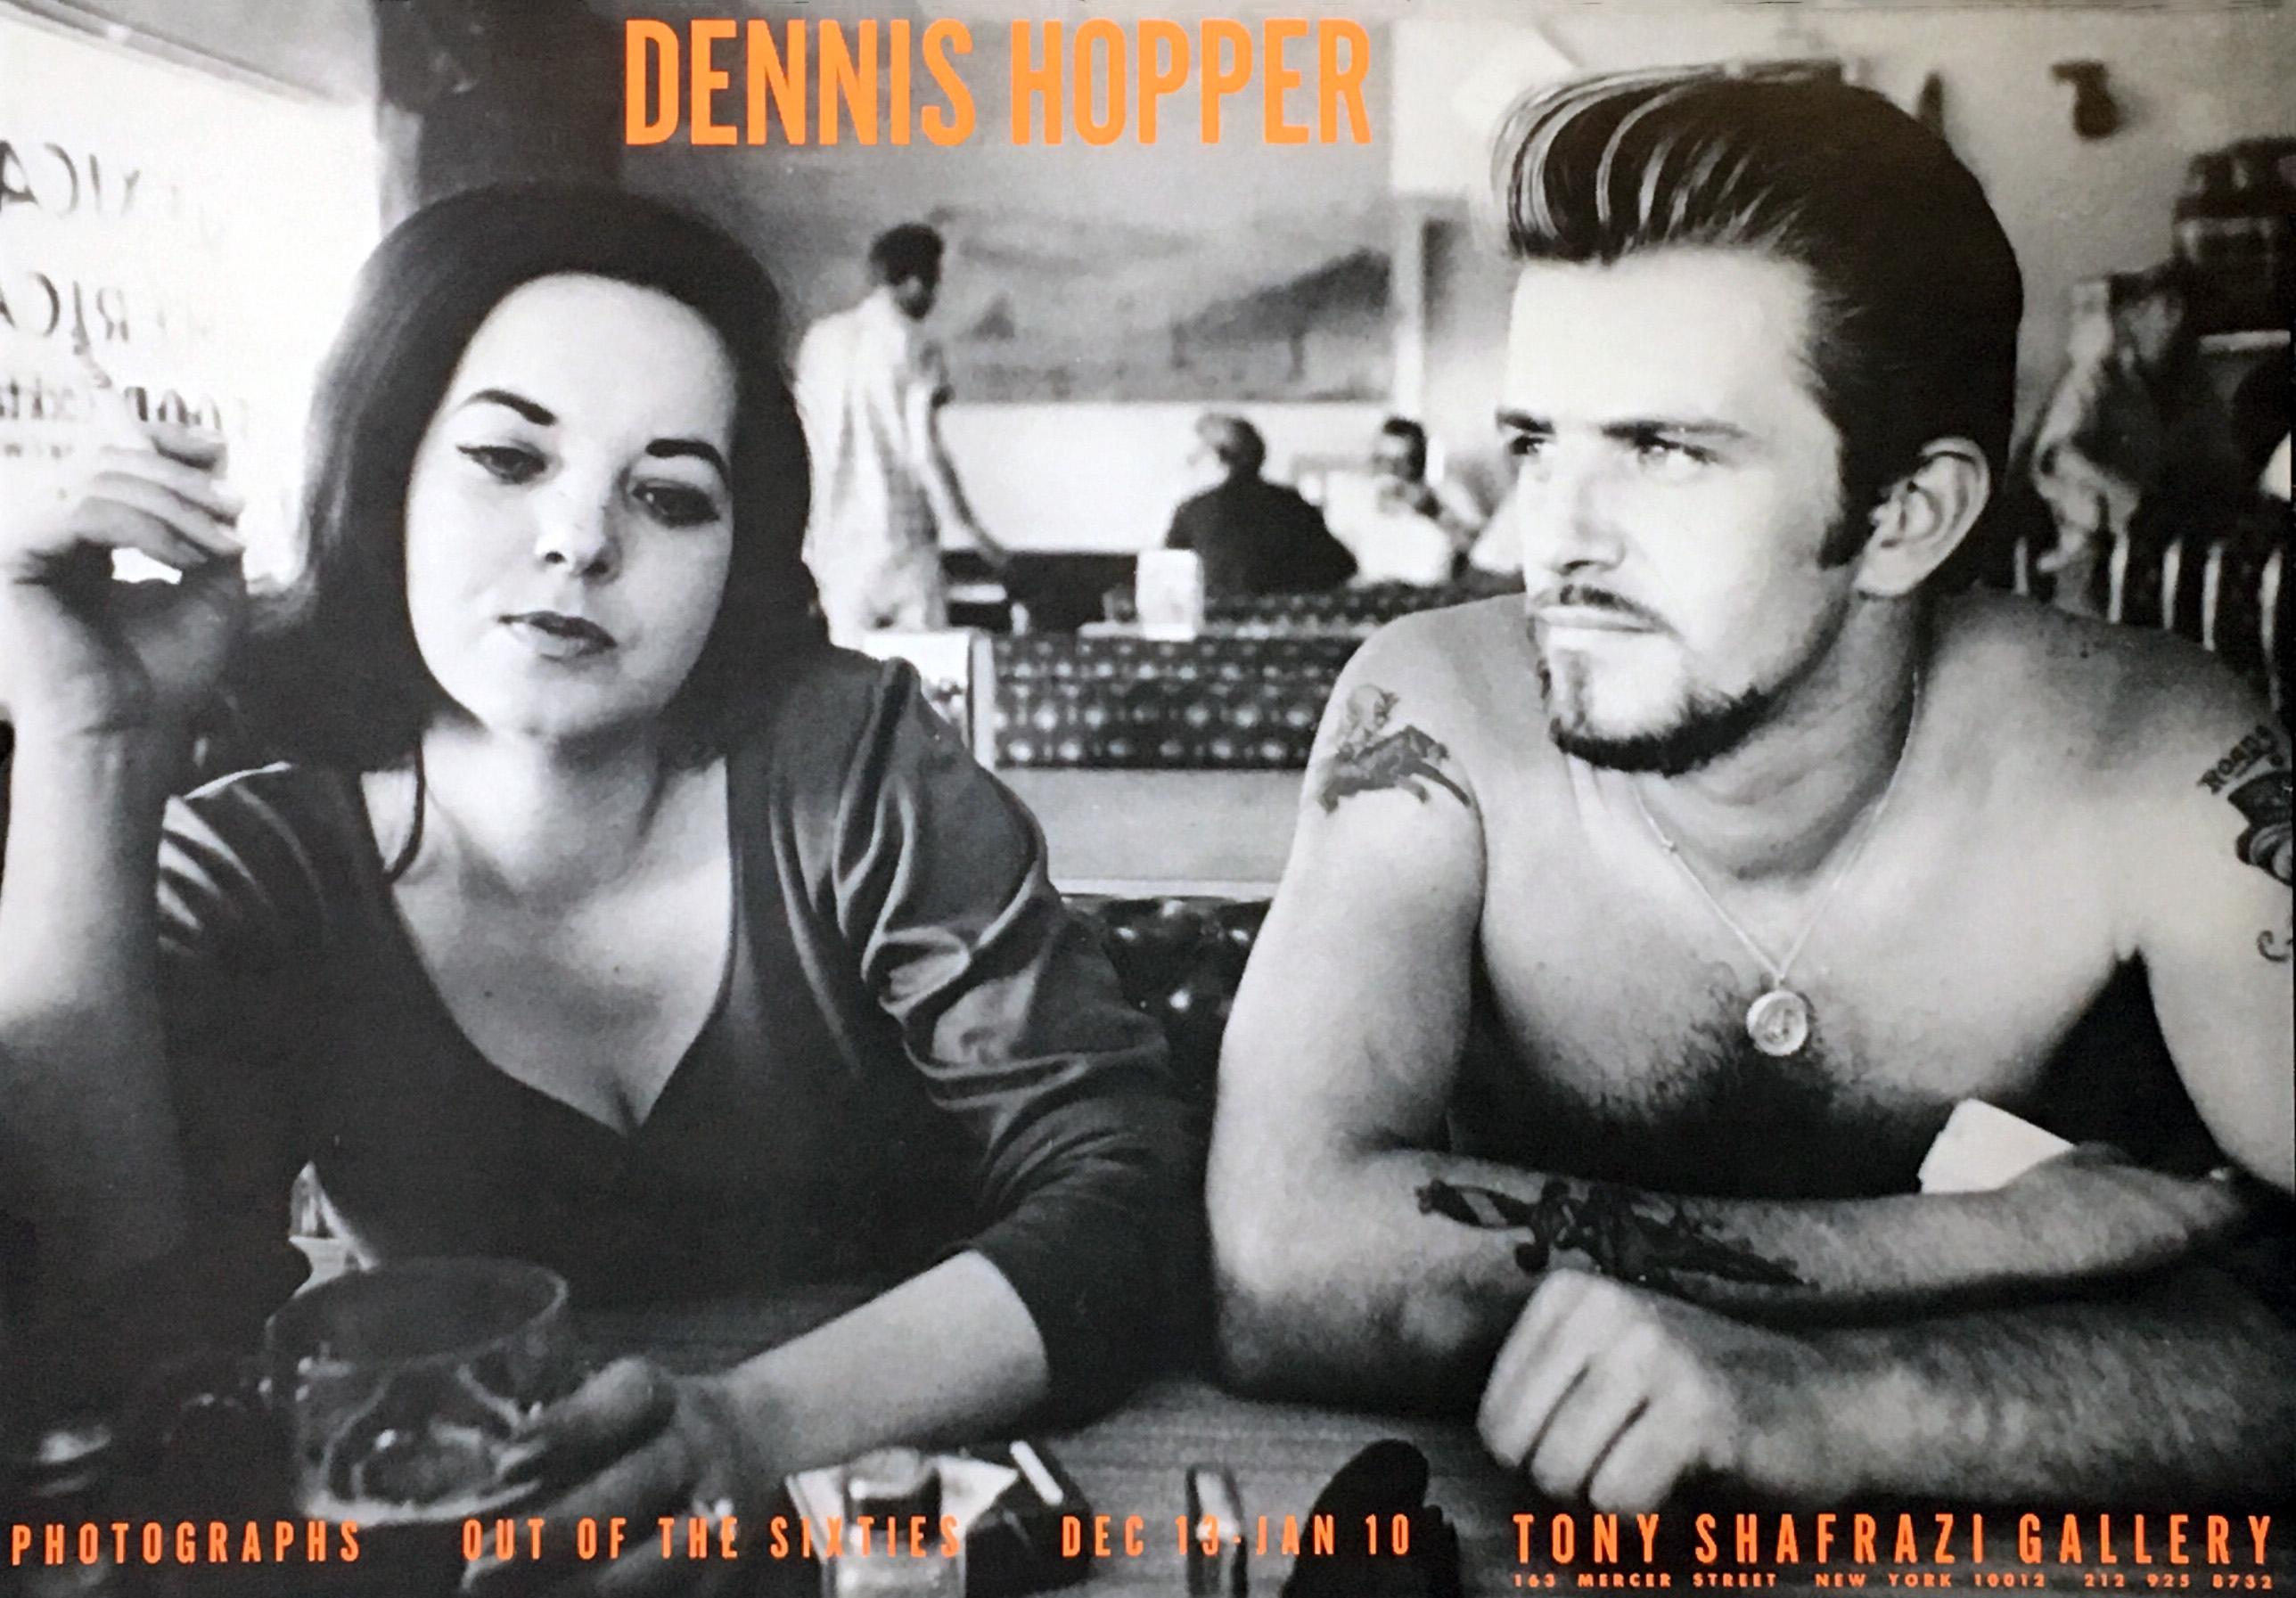 Dennis Hopper, Aus den Sechzigern:
1986 Ausstellungsplakat, herausgegeben von der Galerie Tony Shafrazi, New York 1986
Bildmerkmale: Dennis Hoppers 'Biker Couple' (1961) 

Medium: Offset-Lithographie.
Abmessungen: 17 x 24 Zoll.
Einige kleinere